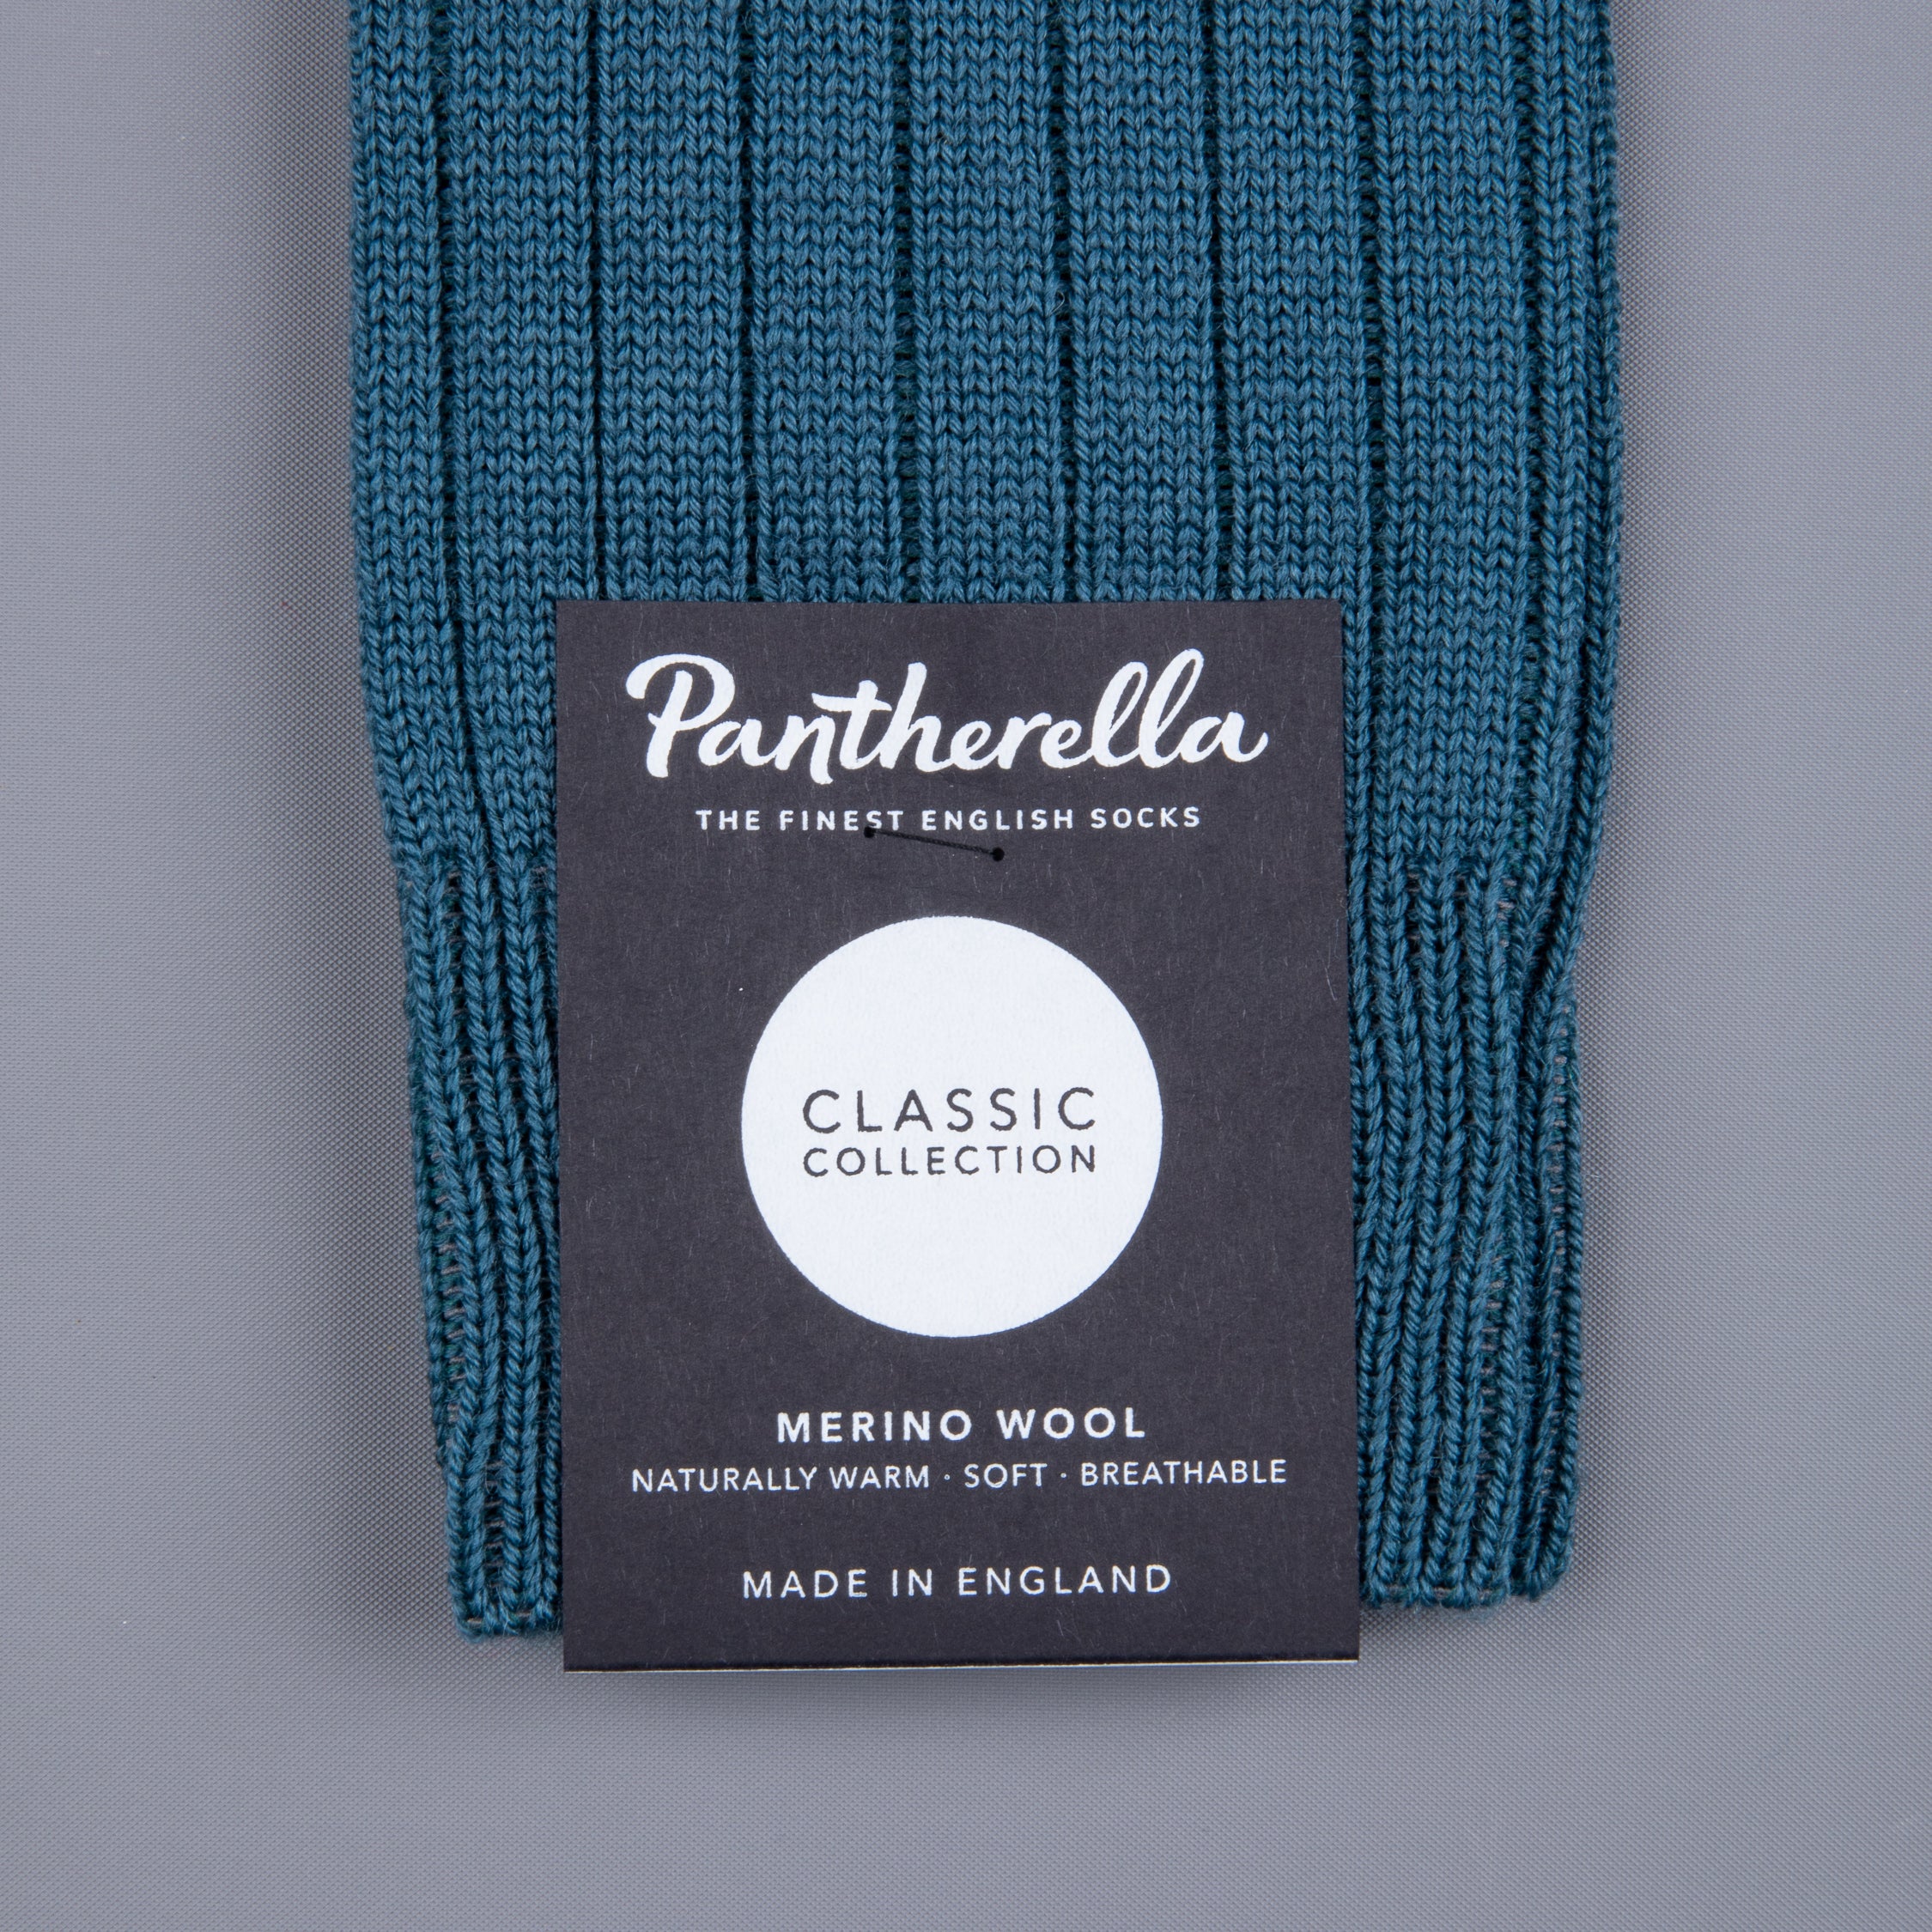 Frans Boone x Pantherella Packington Merino wool socks Teal